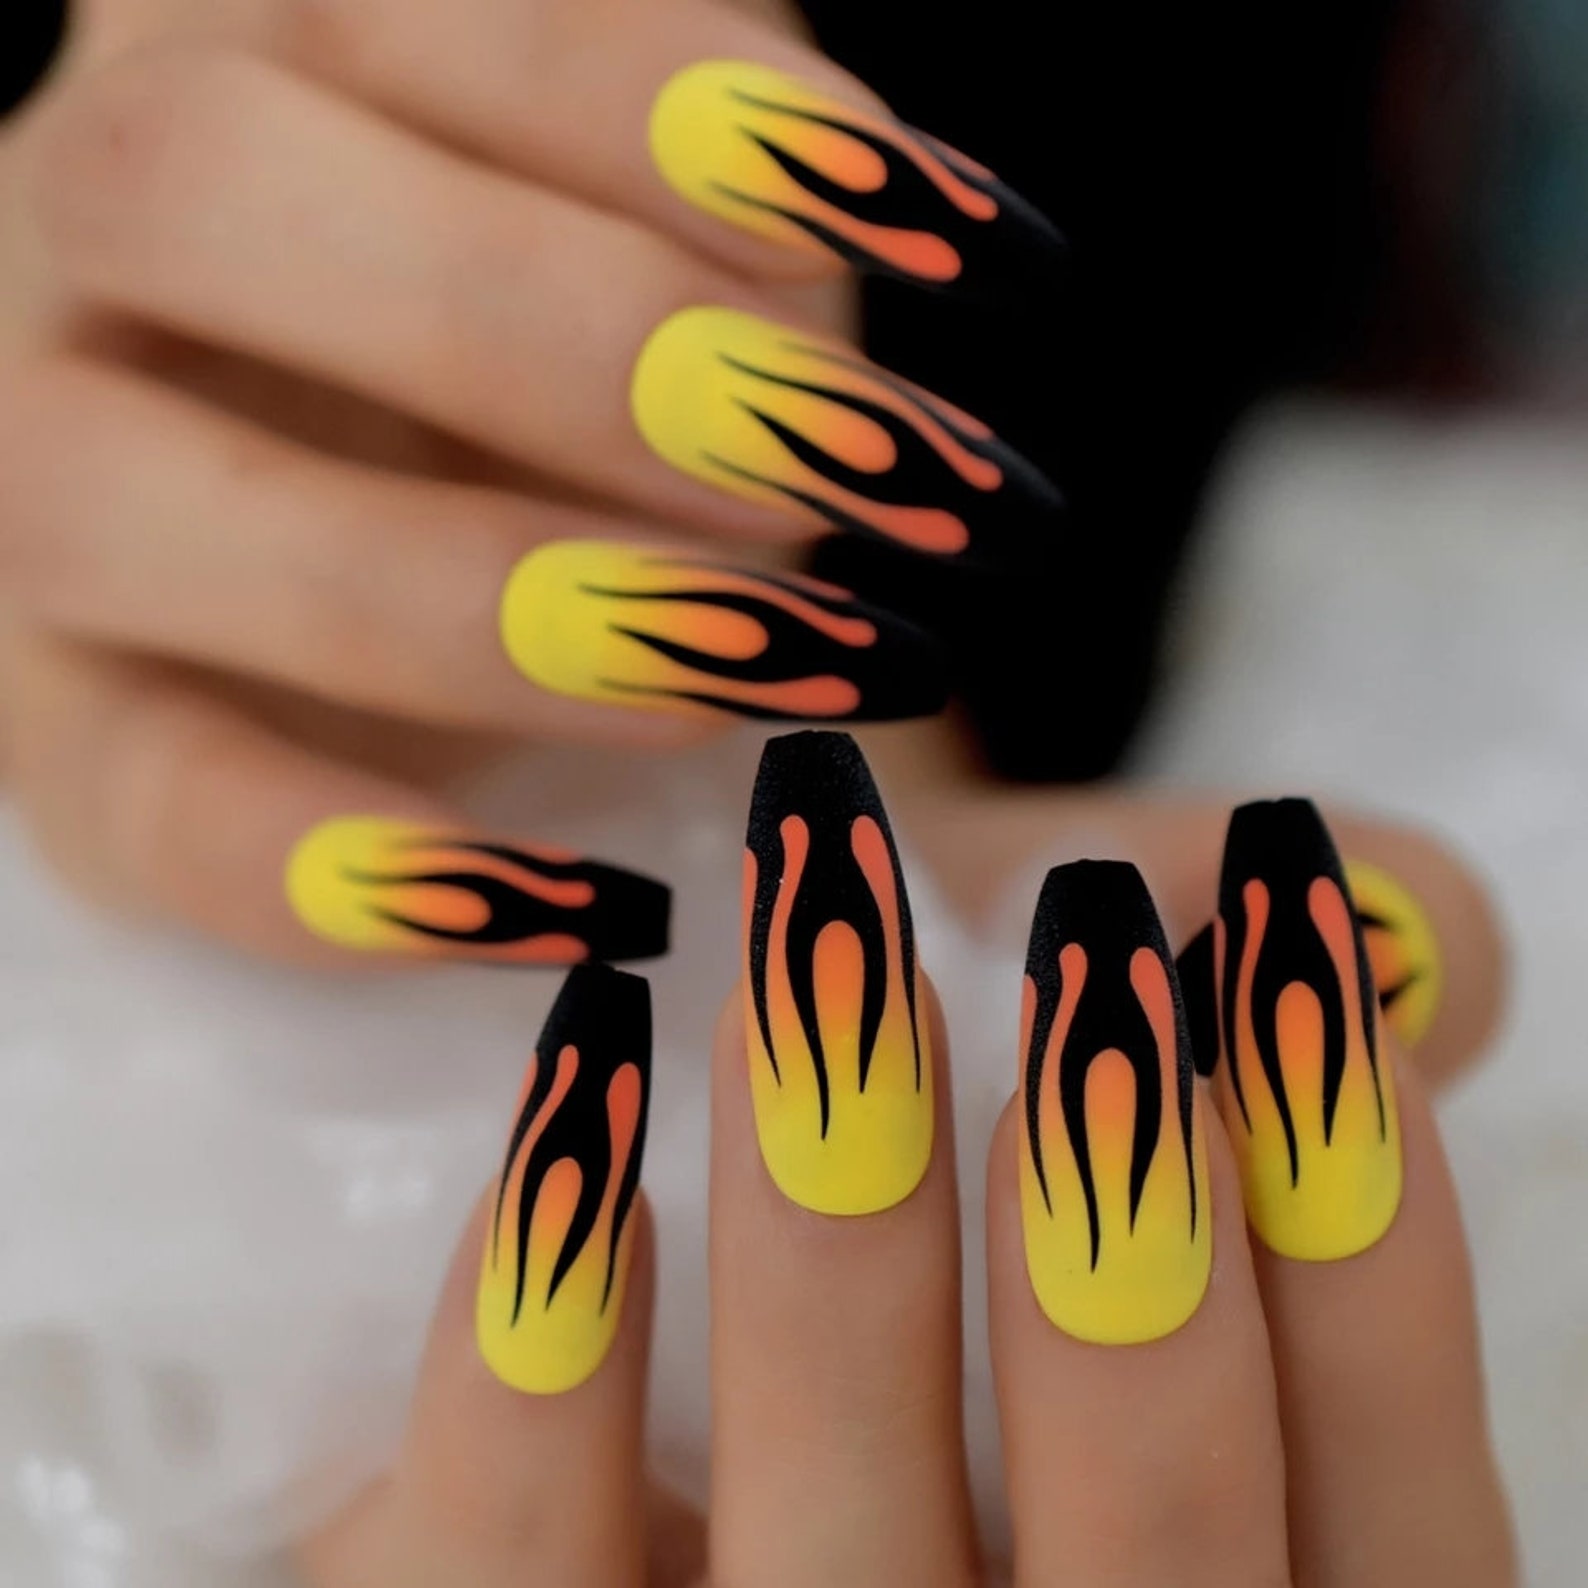 Дизайн ногтей огонь. Ногти с огнем. Маникюр на длинные ногти огонь. Маникюр пламя. Дизайн ногтей желтый с черным.